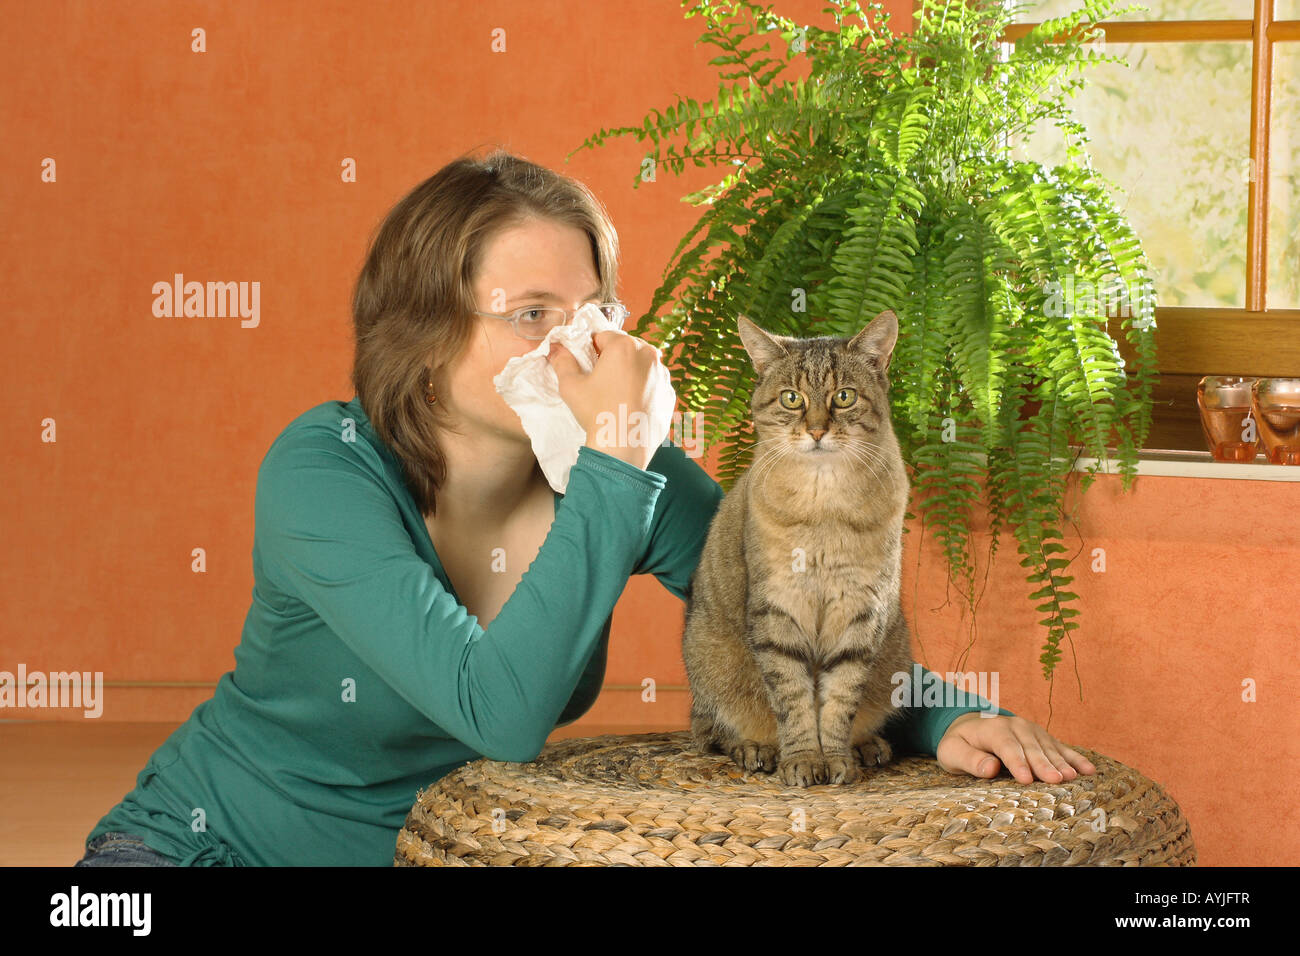 Femme et chat domestique - chat allergie Banque D'Images